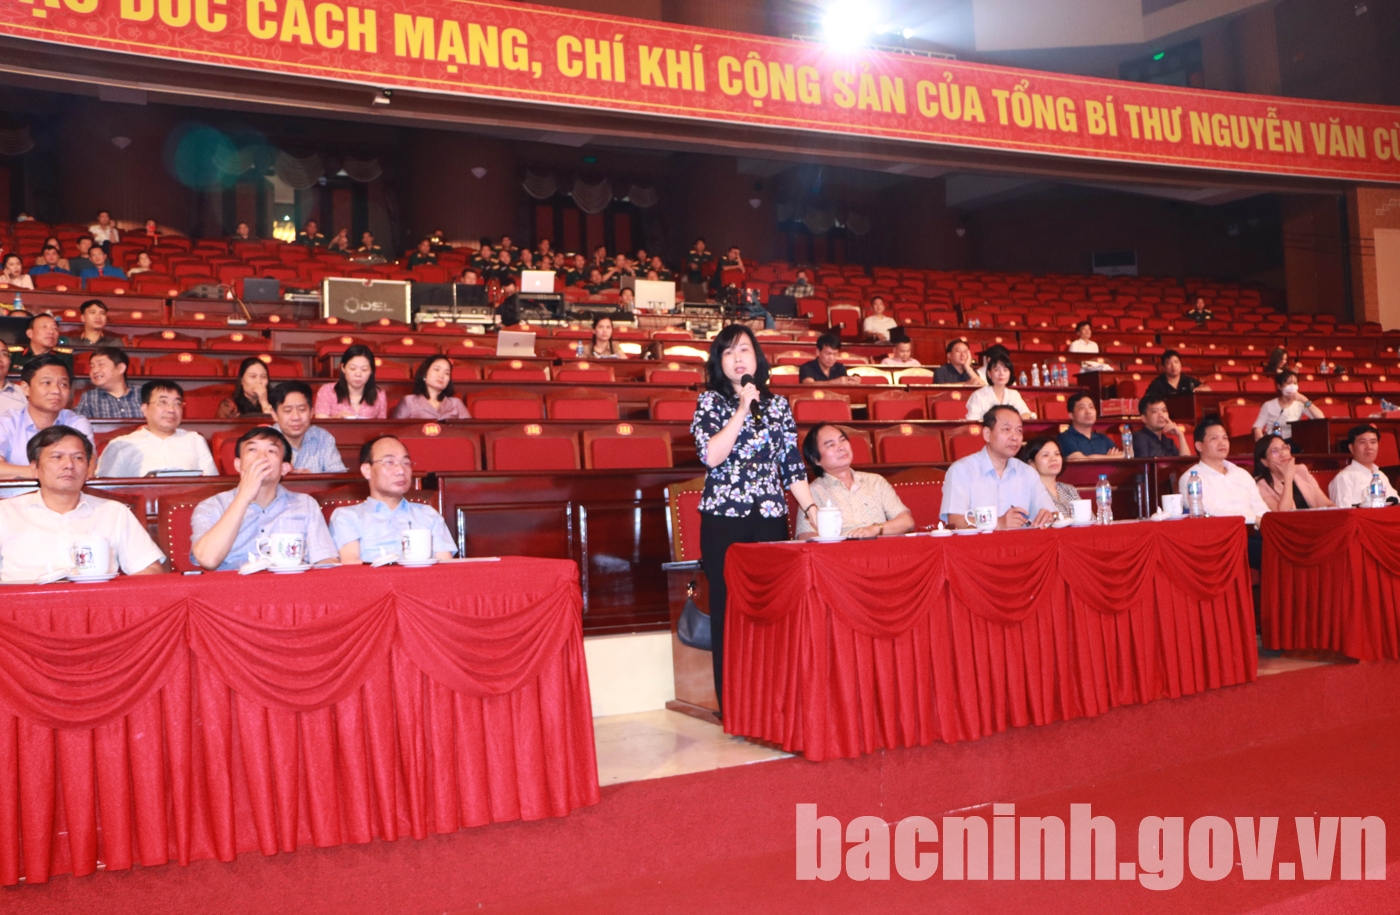 Tổng duyệt Chương trình Lễ kỷ niệm 110 năm Ngày sinh Tổng Bí thư Nguyễn Văn Cừ